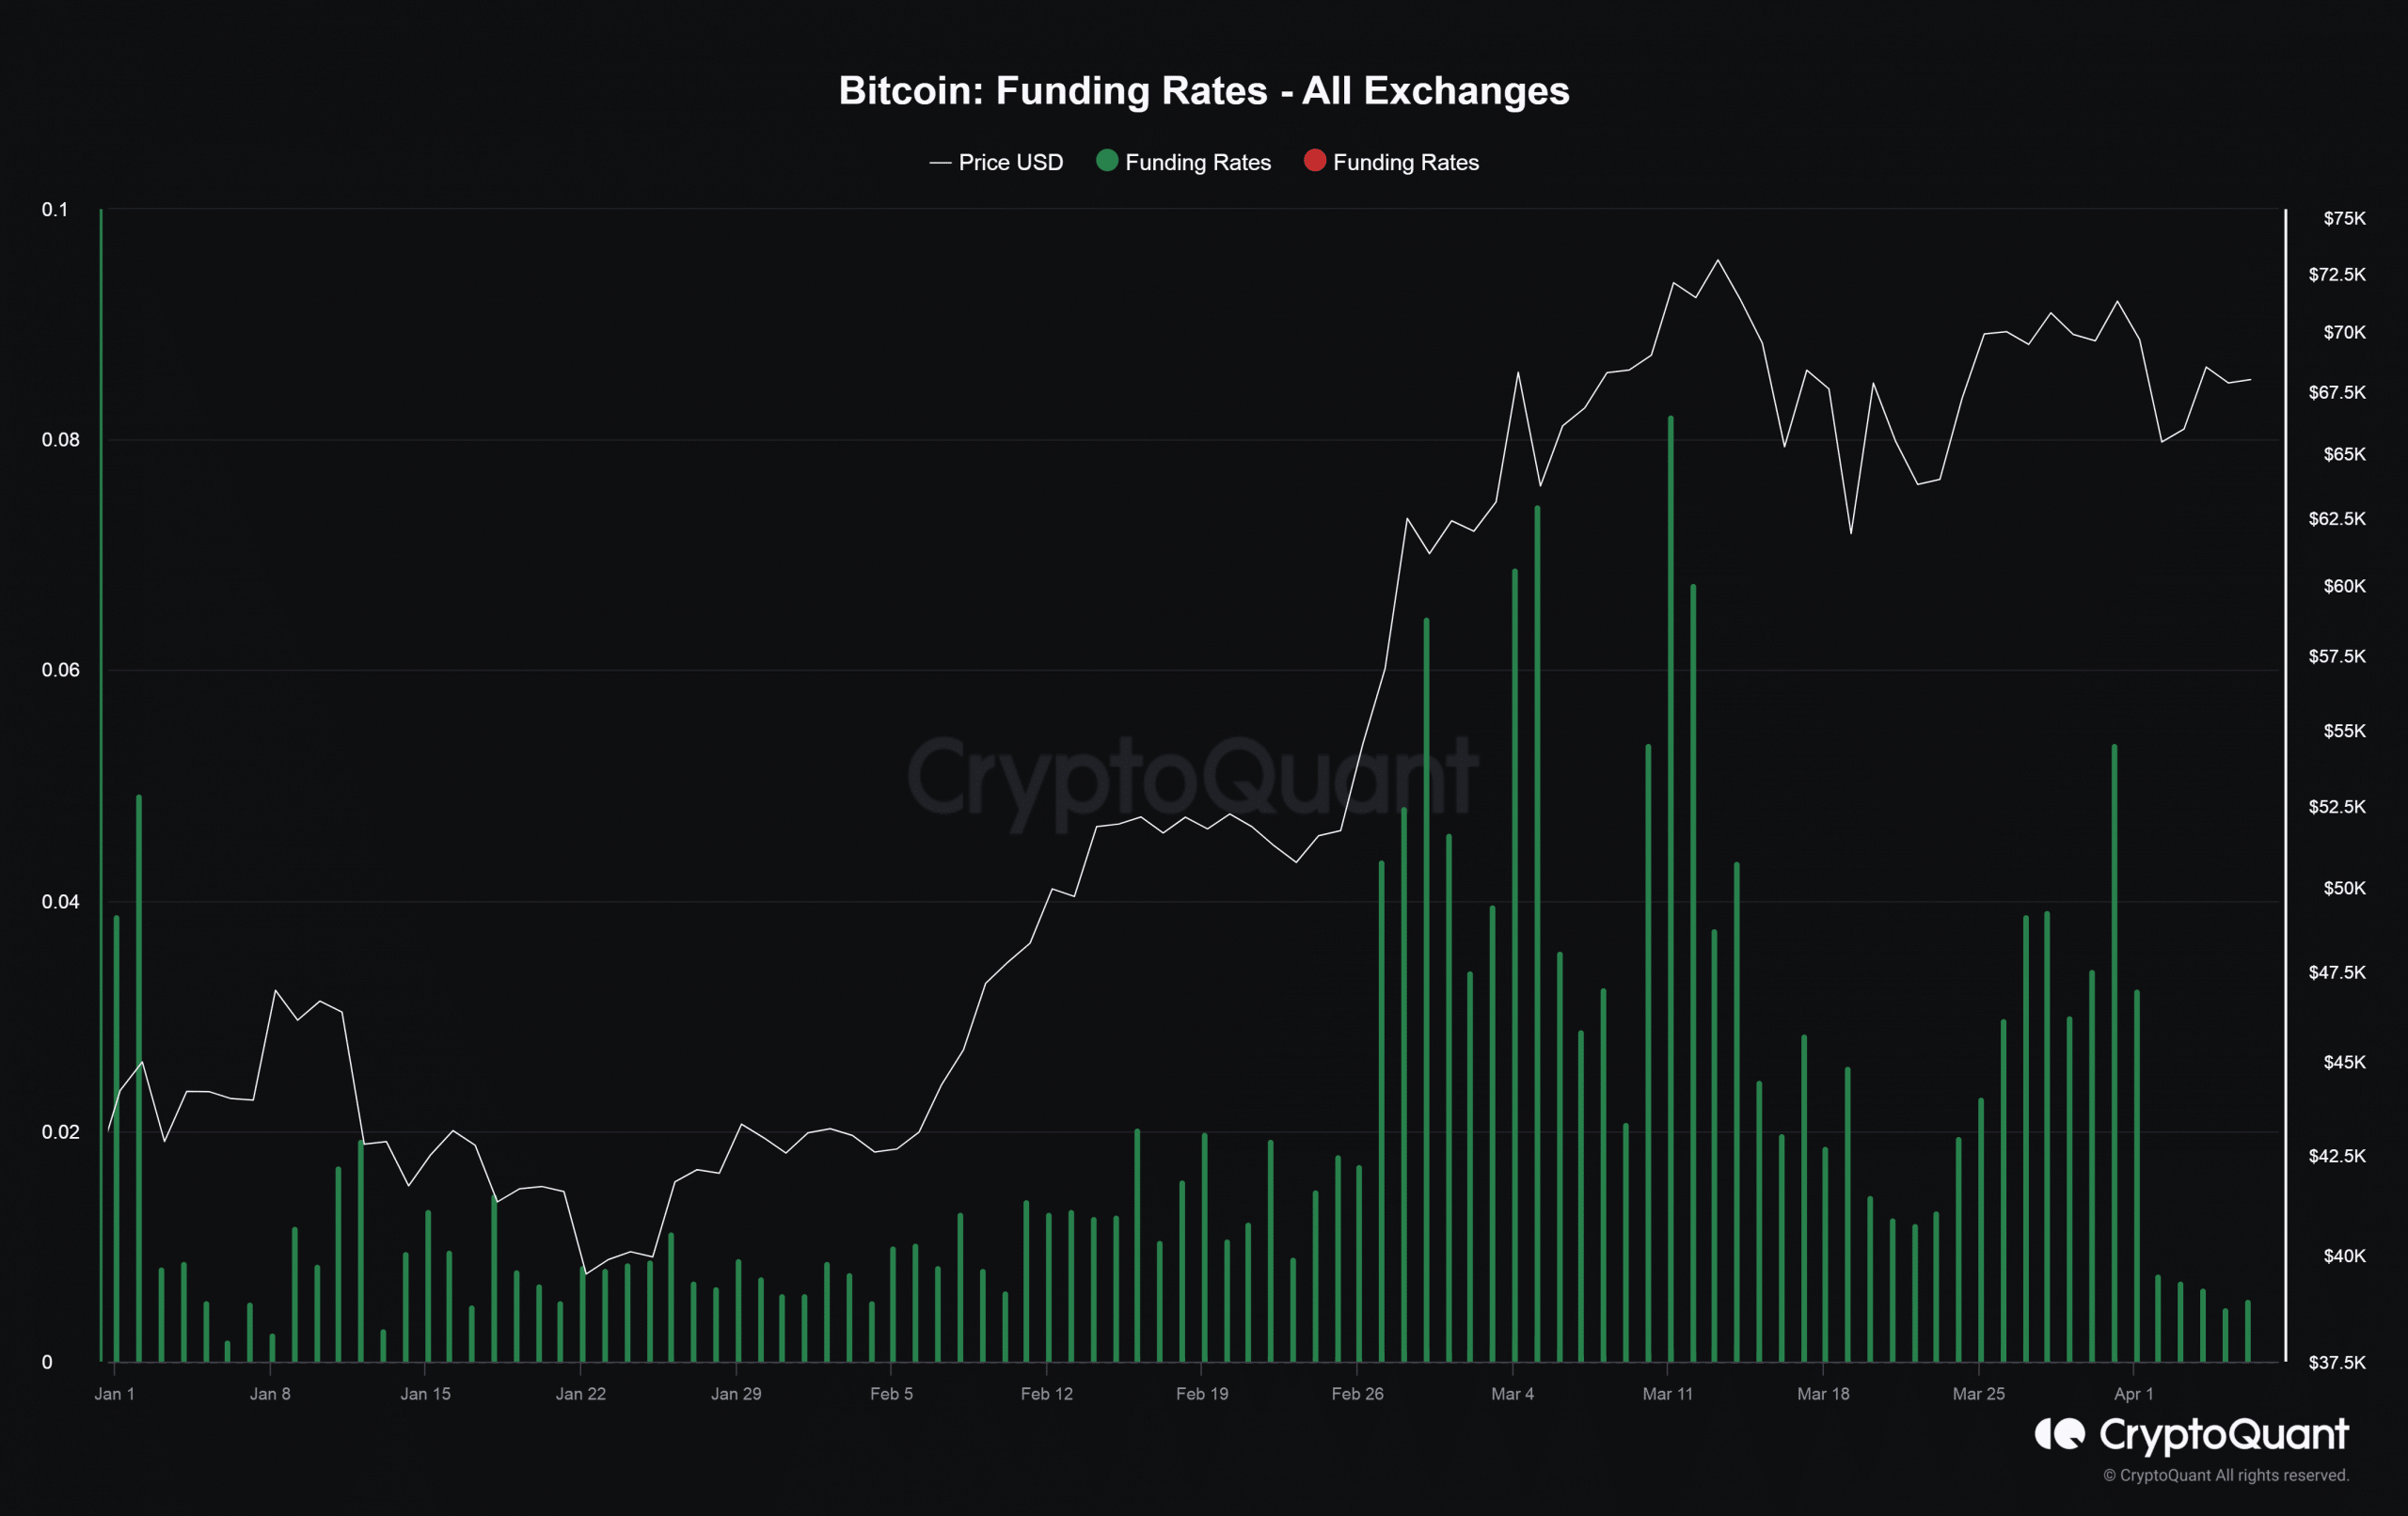 Bitcoin financing rates